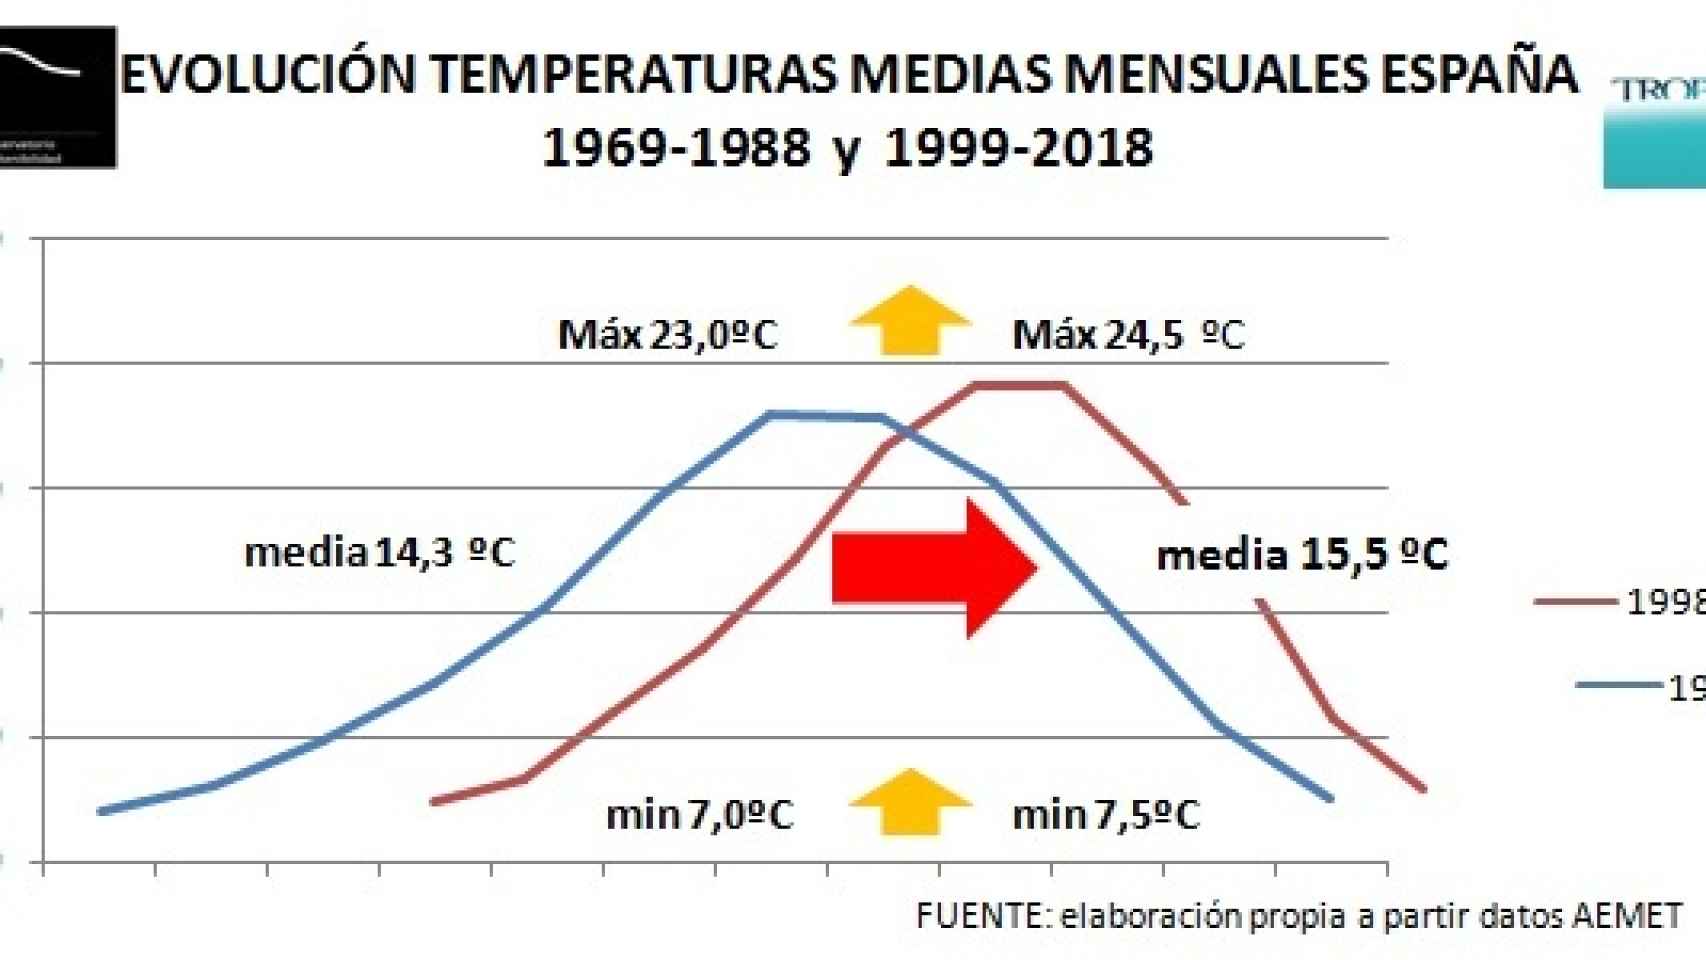 Subida de temperaturas mensuales medias desde 1969 a 2018